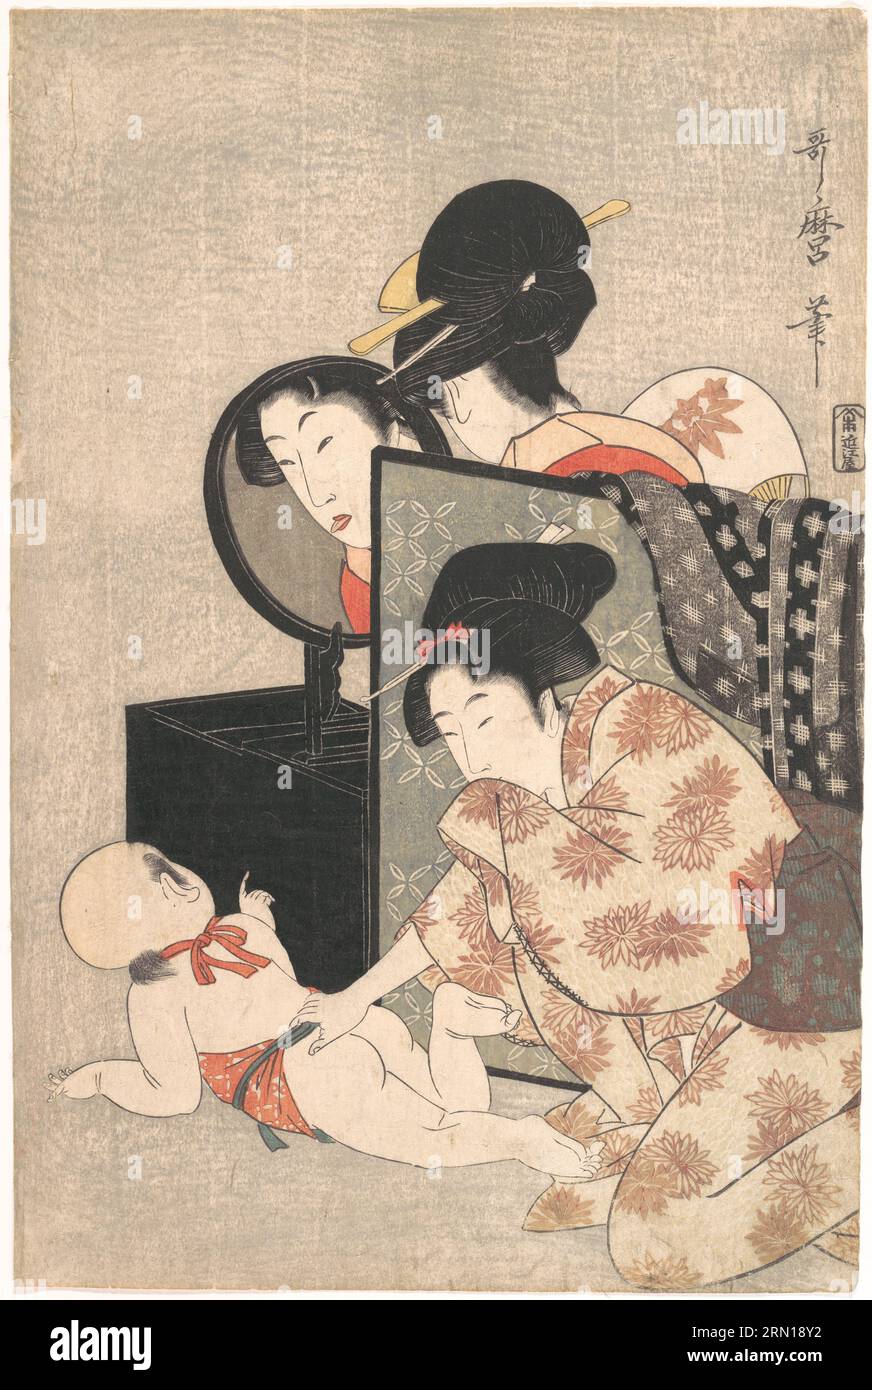 Japon : deux femmes avec bébé. Estampe sur bois Ukiyo-e de Kitagawa Utamaro (1753 - 31 octobre 1806), c. 1793. Kitagawa Utamaro était un graveur et peintre japonais, considéré comme l'un des plus grands artistes de gravures sur bois (ukiyo-e). Il est surtout connu pour ses études magistralement composées de femmes, connues sous le nom de bijinga. Il a également produit des études sur la nature, en particulier des livres illustrés d'insectes. Banque D'Images